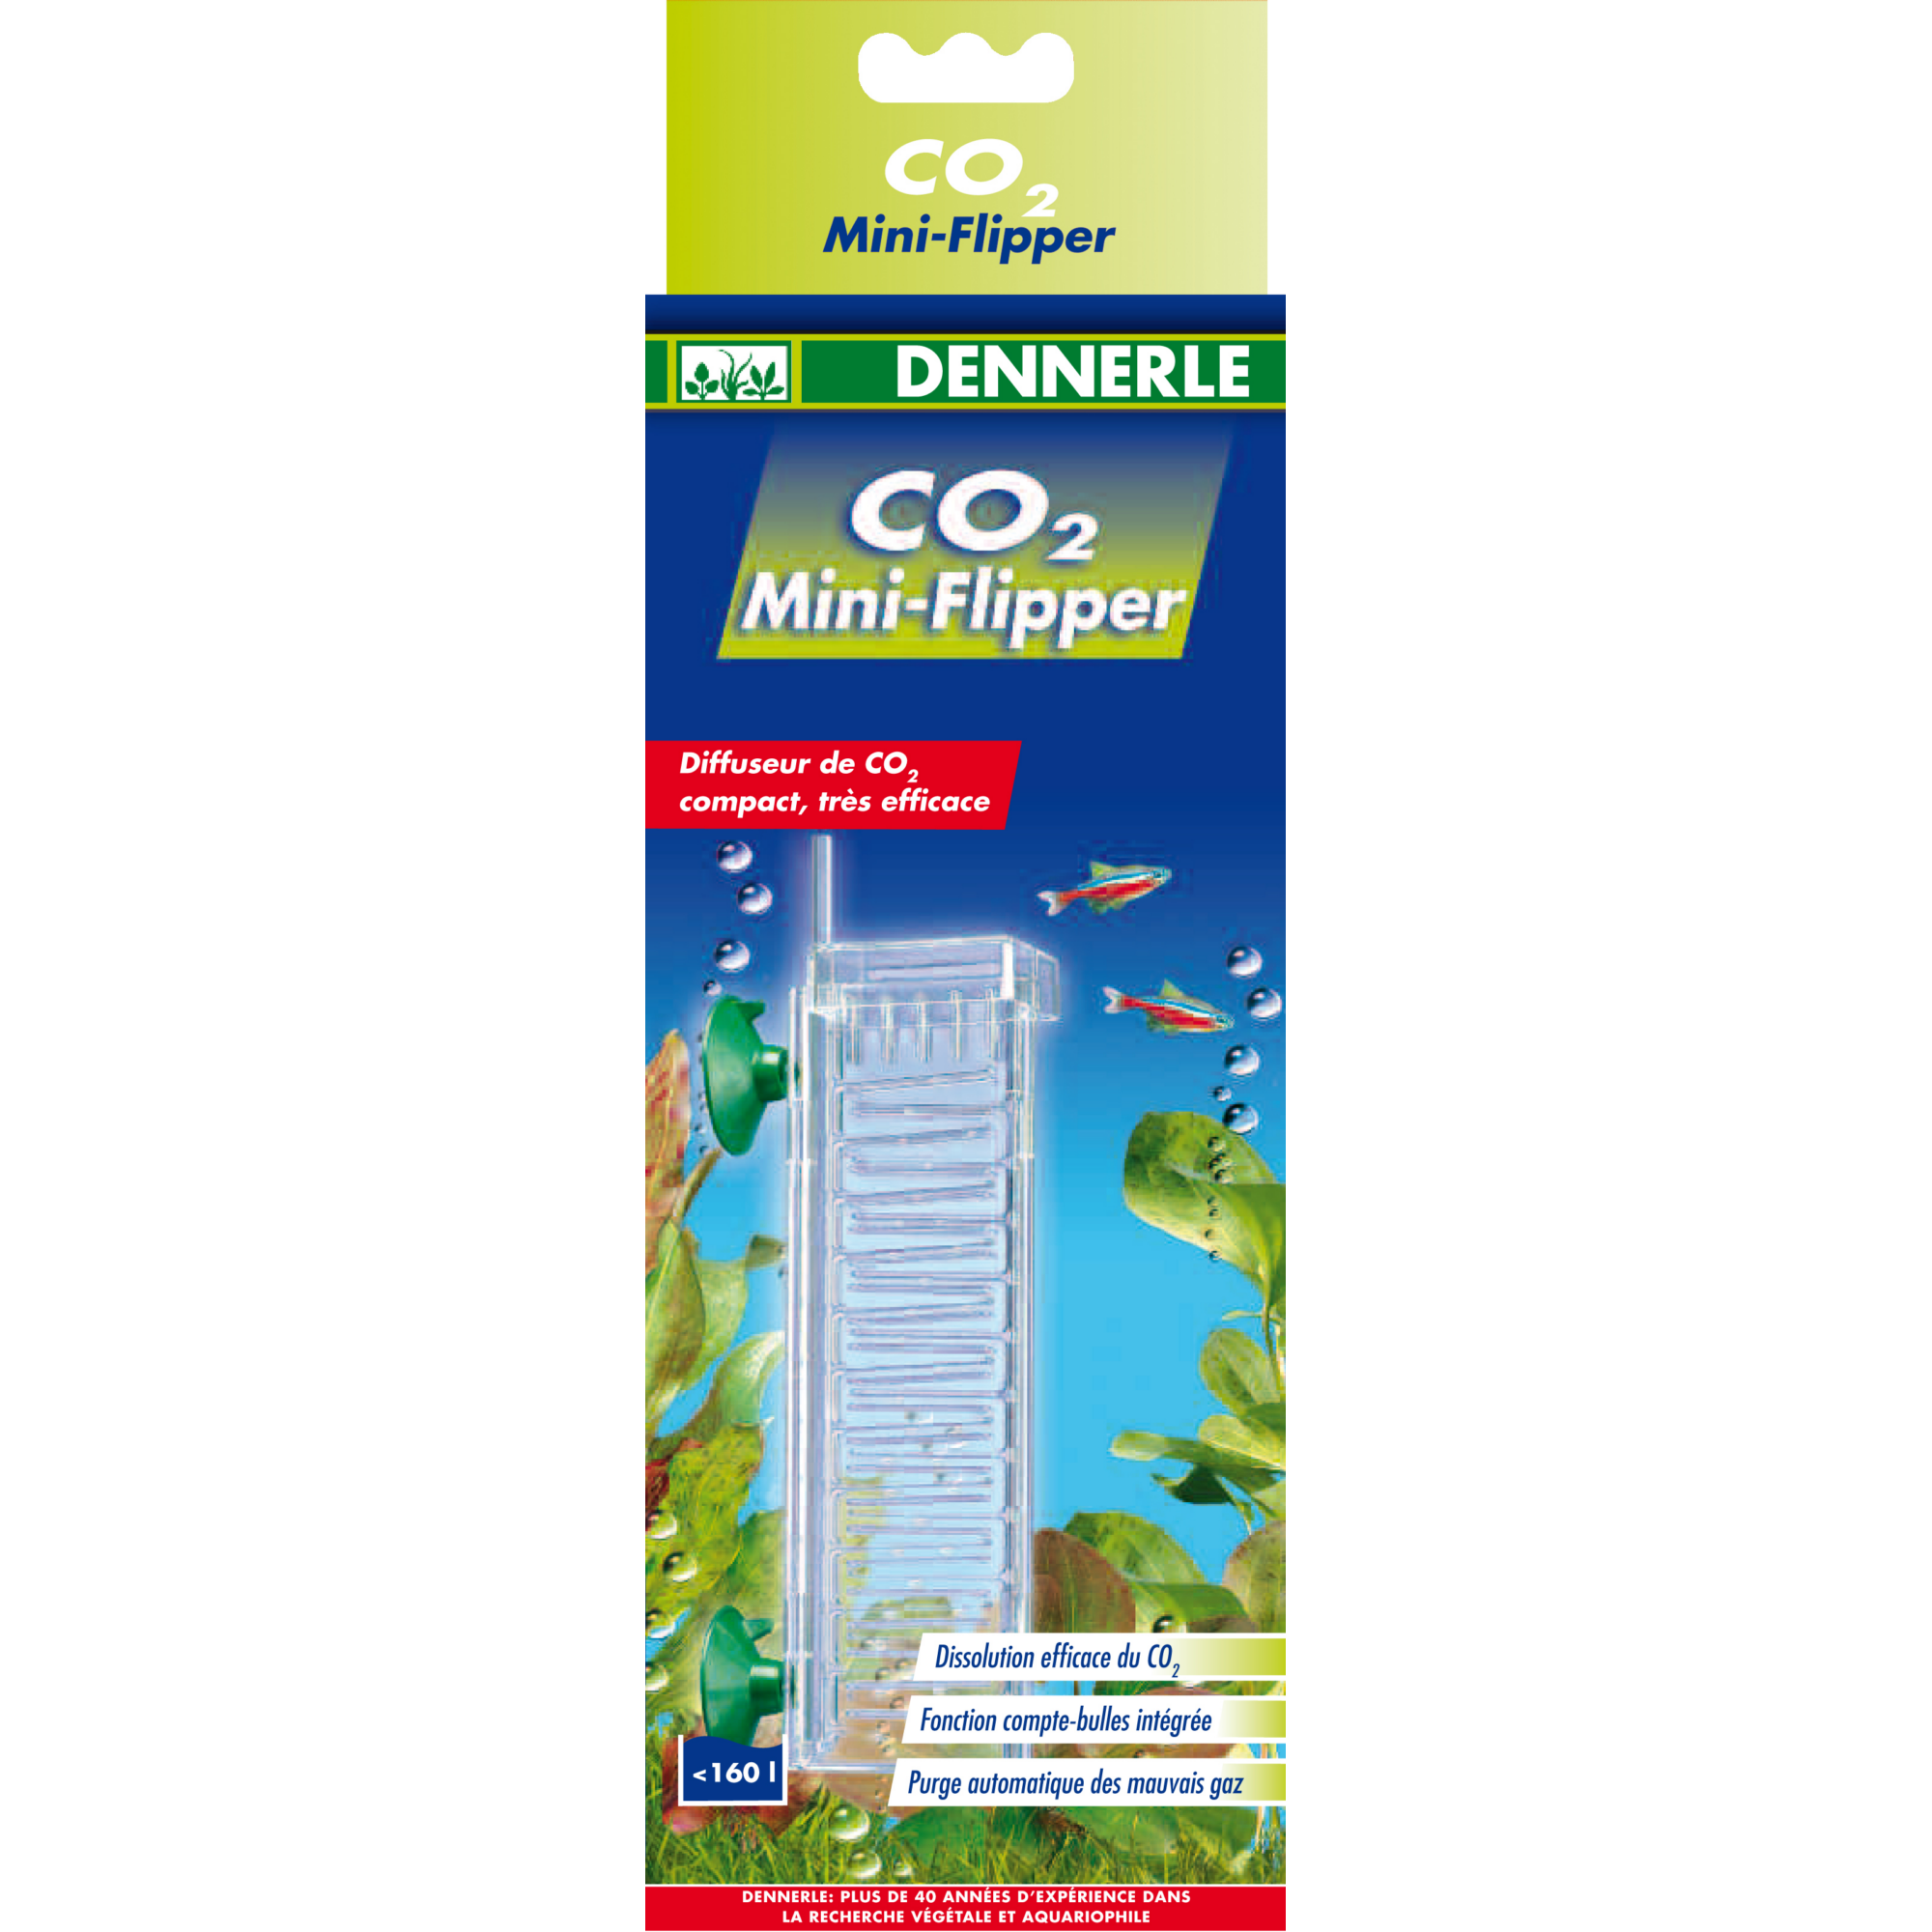 CO2 Mini-Flipper + product picture